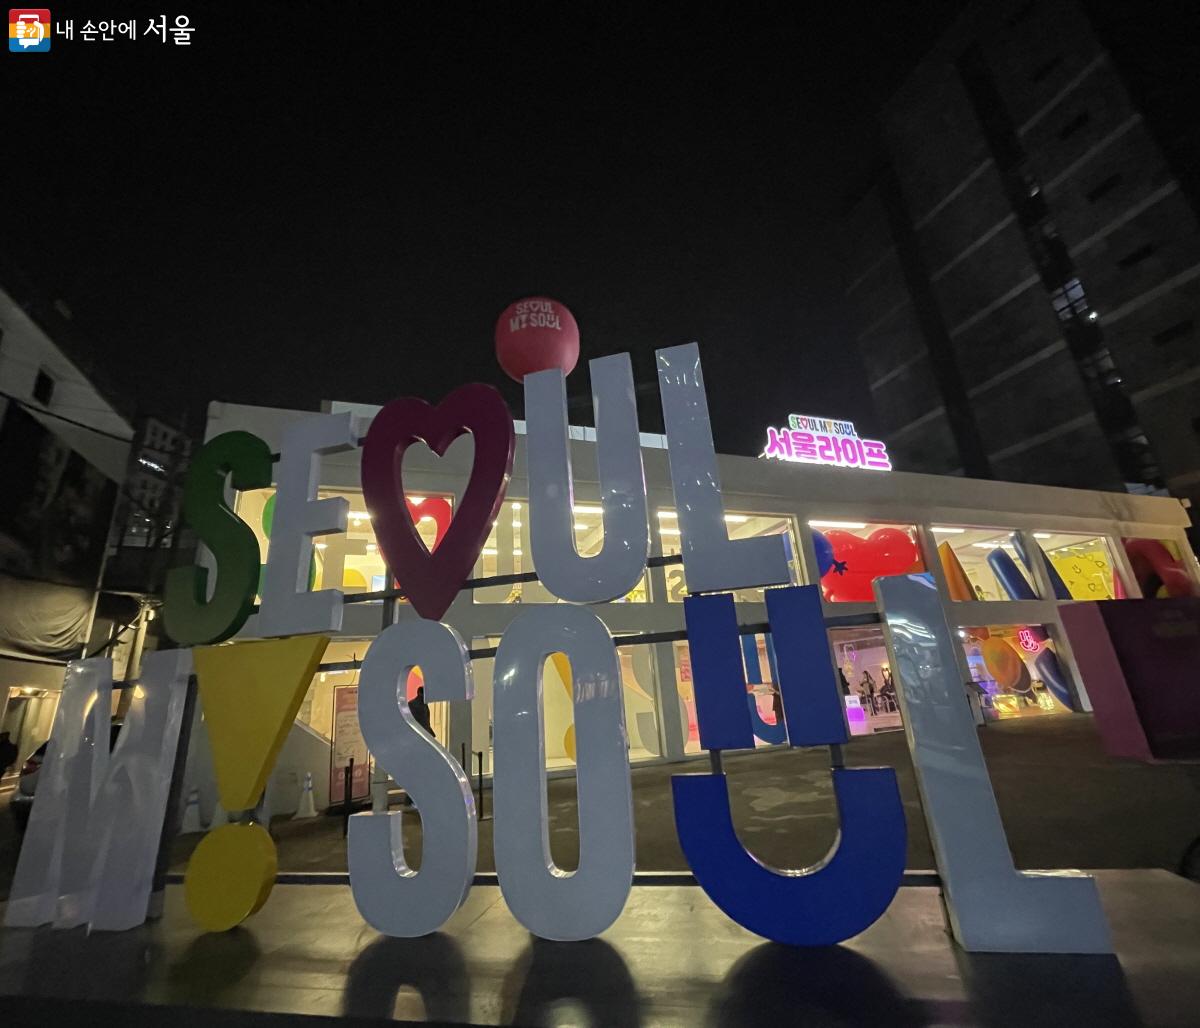 ‘서울 굿즈 팝업스토어’가 열린 복합문화공간 ‘성수 센느’ ⓒ이정민